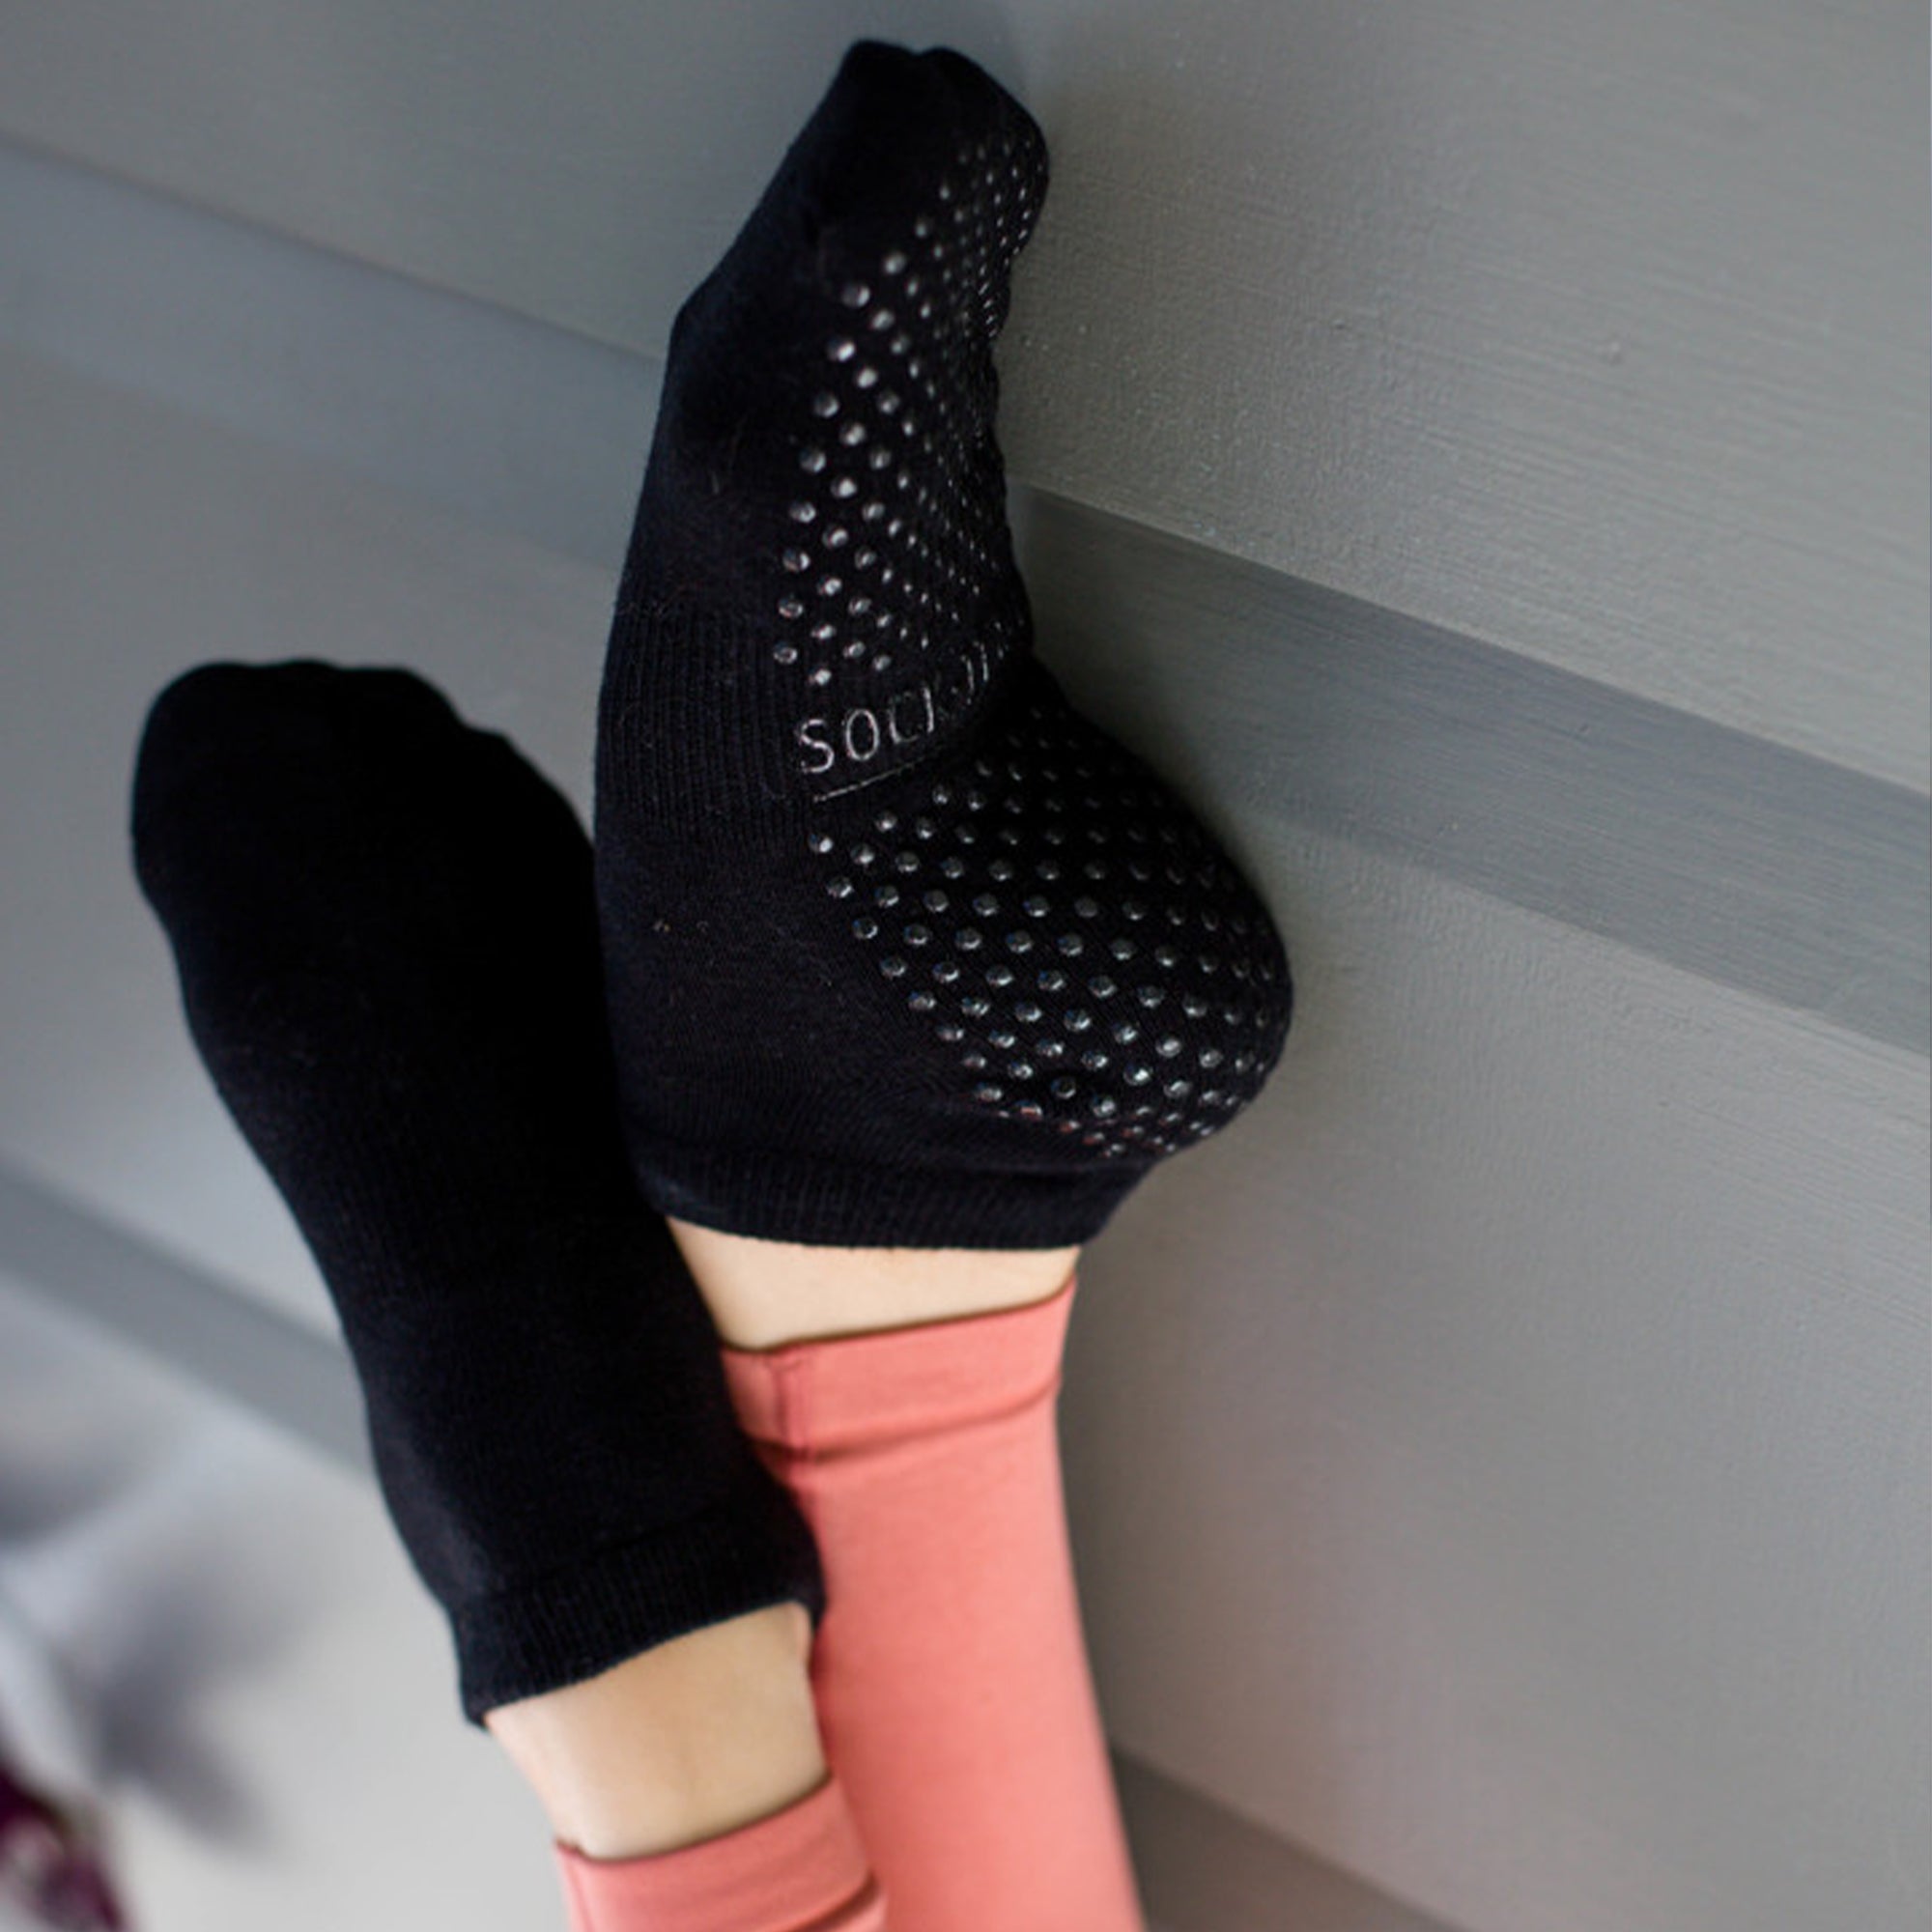 black non-slip grip socks for pilates - sock-it and co